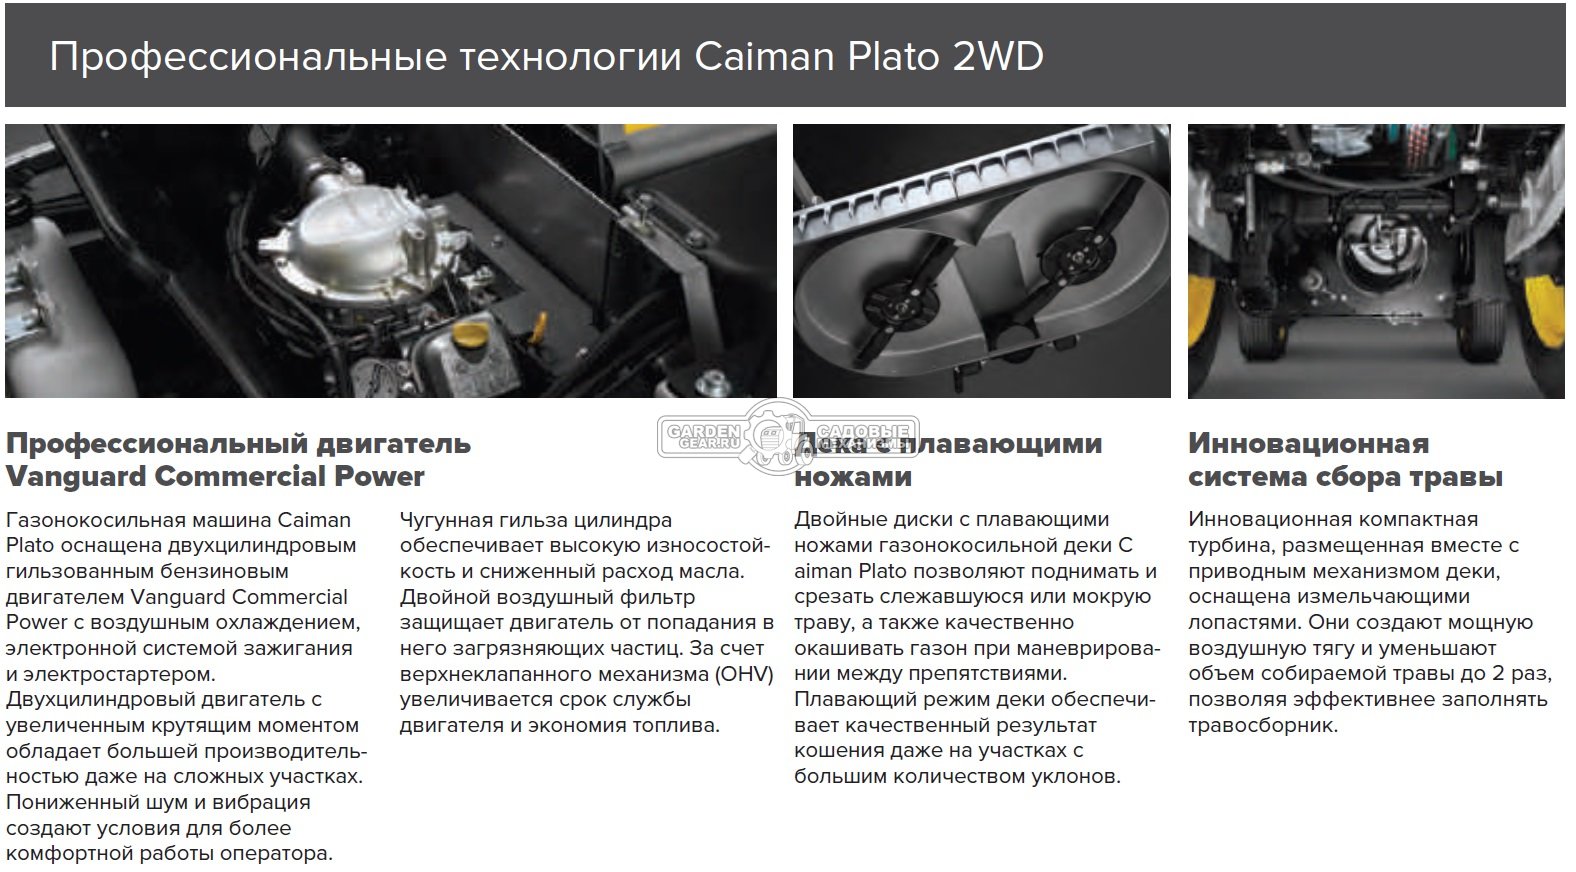 Коммерческий газонокосильный райдер Caiman Plato 2WD с декой 126 см. (ITA, B&S Vanguard, 627 куб.см., травосборник 600 л. с гидроприводом, 650 кг.)